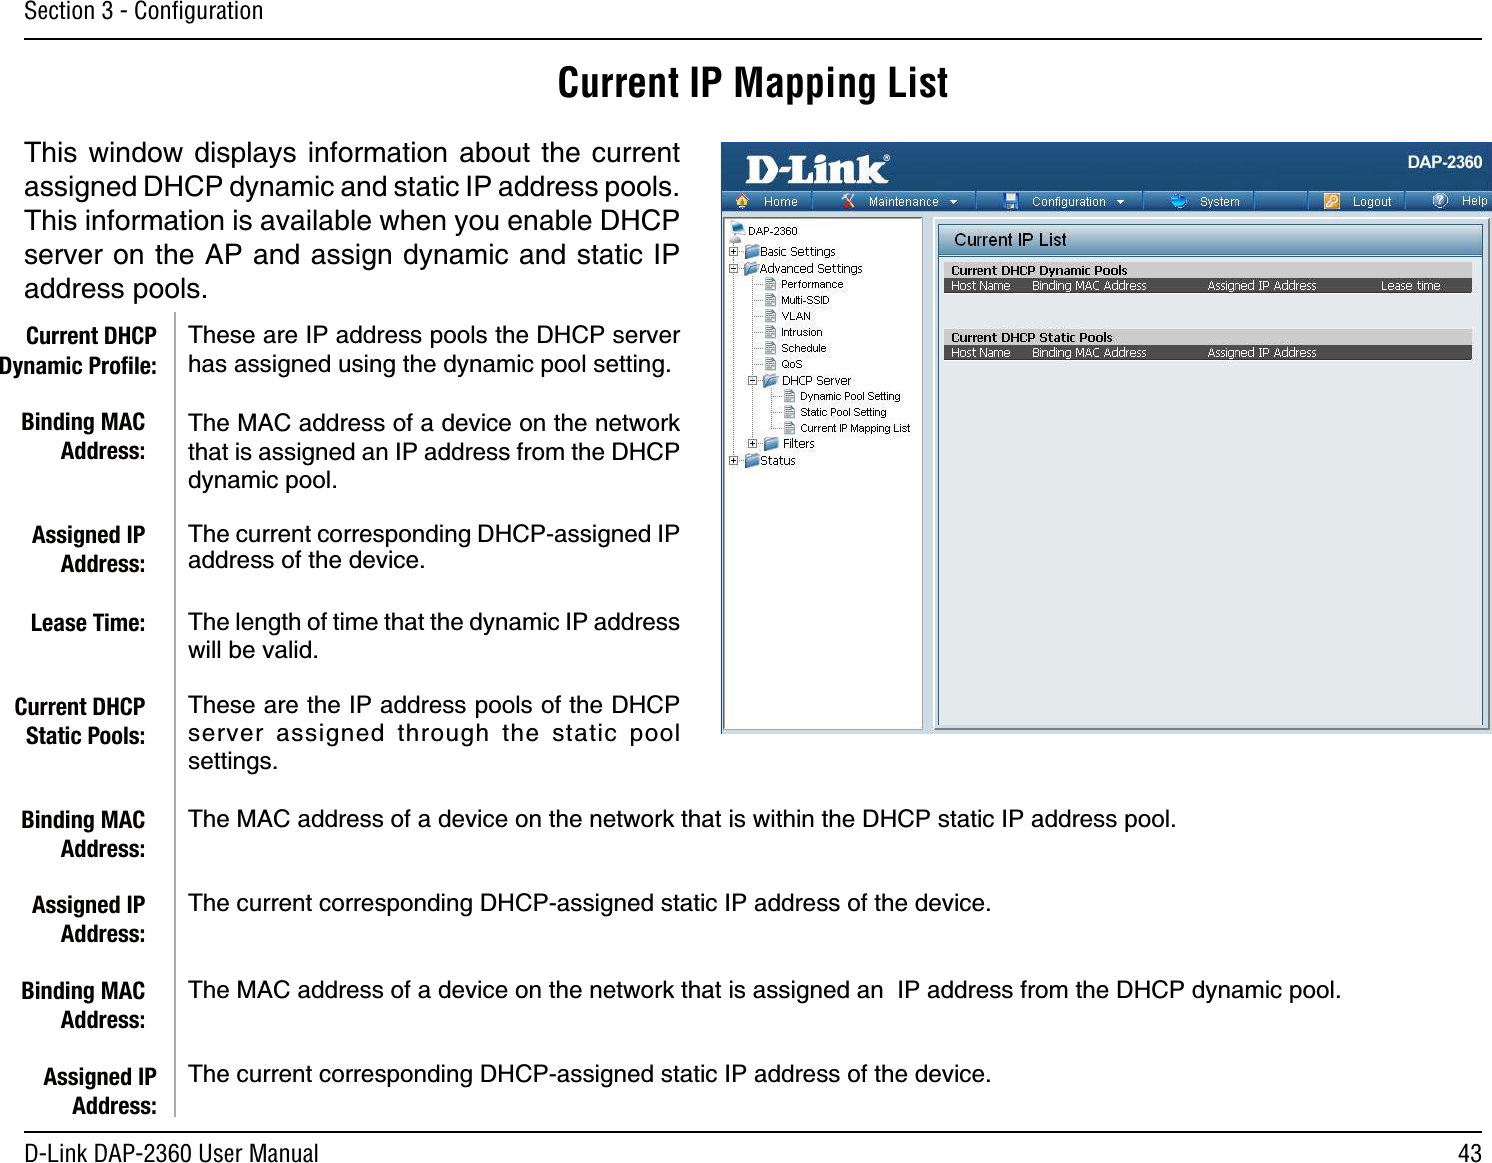 43D-Link DAP-2360 User ManualSection 3 - ConﬁgurationCurrent IP Mapping List6JKUYKPFQY FKURNC[U KPHQTOCVKQP CDQWVVJG EWTTGPVCUUKIPGF&amp;*%2F[PCOKECPFUVCVKE+2CFFTGUURQQNU6JKUKPHQTOCVKQPKUCXCKNCDNGYJGP[QWGPCDNG&amp;*%2UGTXGTQPVJG#2CPFCUUKIPF[PCOKECPFUVCVKE+2CFFTGUURQQNU6JGUGCTG+2CFFTGUURQQNUVJG&amp;*%2UGTXGTJCUCUUKIPGFWUKPIVJGF[PCOKERQQNUGVVKPI6JG/#%CFFTGUUQHCFGXKEGQPVJGPGVYQTMVJCVKUCUUKIPGFCP+2CFFTGUUHTQOVJG&amp;*%2F[PCOKERQQN6JGEWTTGPVEQTTGURQPFKPI&amp;*%2CUUKIPGF+2CFFTGUUQHVJGFGXKEG6JGNGPIVJQHVKOGVJCVVJGF[PCOKE+2CFFTGUUYKNNDGXCNKF6JGUGCTGVJG+2CFFTGUURQQNUQHVJG&amp;*%2UGTXGT CUUKIPGF VJTQWIJ VJG UVCVKE RQQNUGVVKPIU6JG/#%CFFTGUUQHCFGXKEGQPVJGPGVYQTMVJCVKUYKVJKPVJG&amp;*%2UVCVKE+2CFFTGUURQQN6JGEWTTGPVEQTTGURQPFKPI&amp;*%2CUUKIPGFUVCVKE+2CFFTGUUQHVJGFGXKEG6JG/#%CFFTGUUQHCFGXKEGQPVJGPGVYQTMVJCVKUCUUKIPGFCP+2CFFTGUUHTQOVJG&amp;*%2F[PCOKERQQN6JGEWTTGPVEQTTGURQPFKPI&amp;*%2CUUKIPGFUVCVKE+2CFFTGUUQHVJGFGXKEGCurrent DHCP Dynamic Proﬁle:Binding MAC Address:Assigned IP Address:Lease Time:Current DHCP Static Pools:Binding MAC Address:Assigned IP Address:Binding MAC Address:Assigned IP Address: